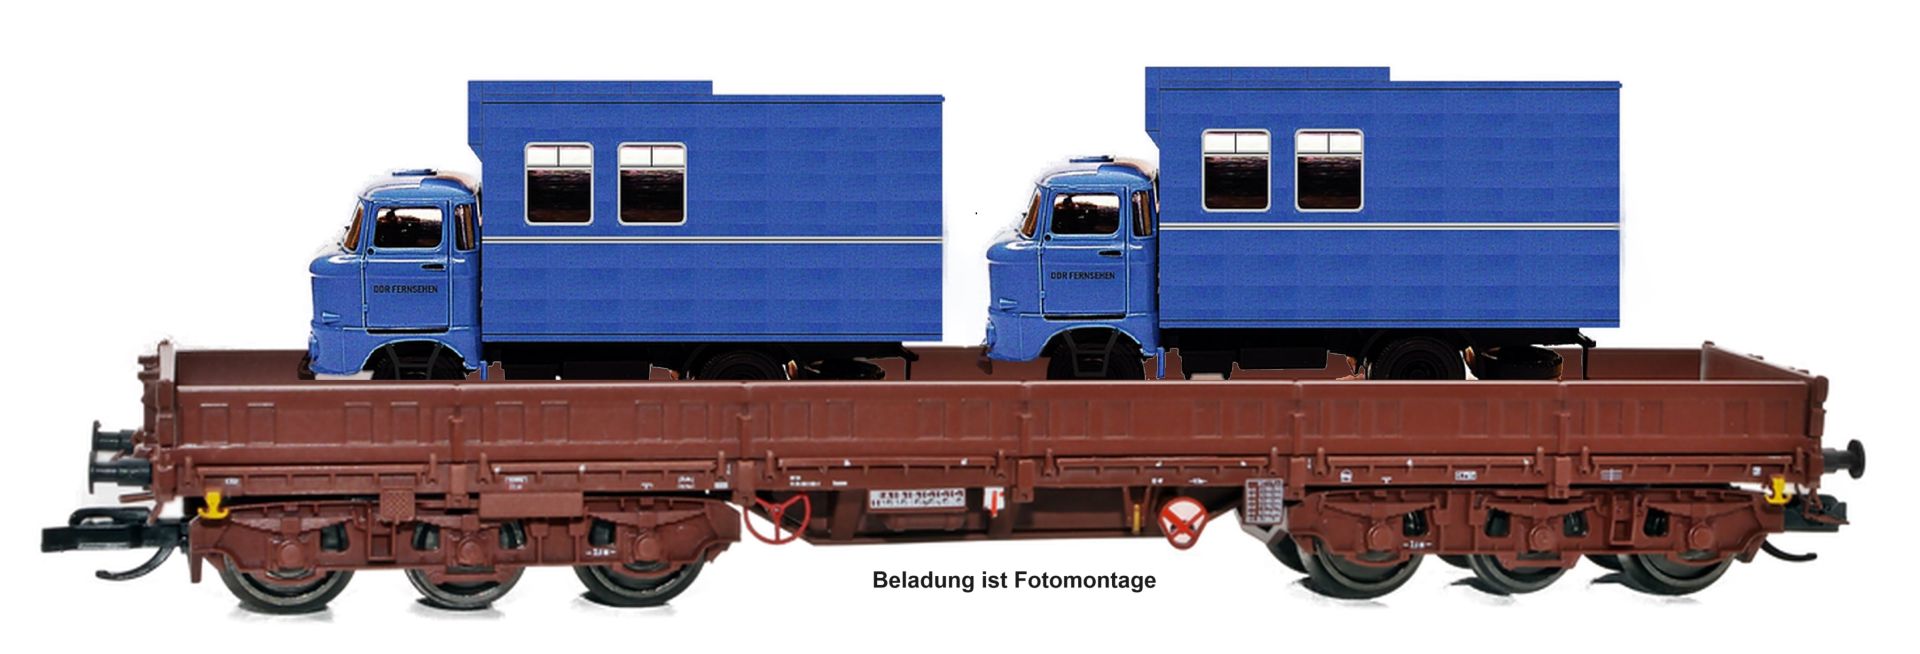 NPE NW 52046 - Schwerlastwagen Samms 4860, DR, Ep.IV, mit W50 DDR-Fernsehen